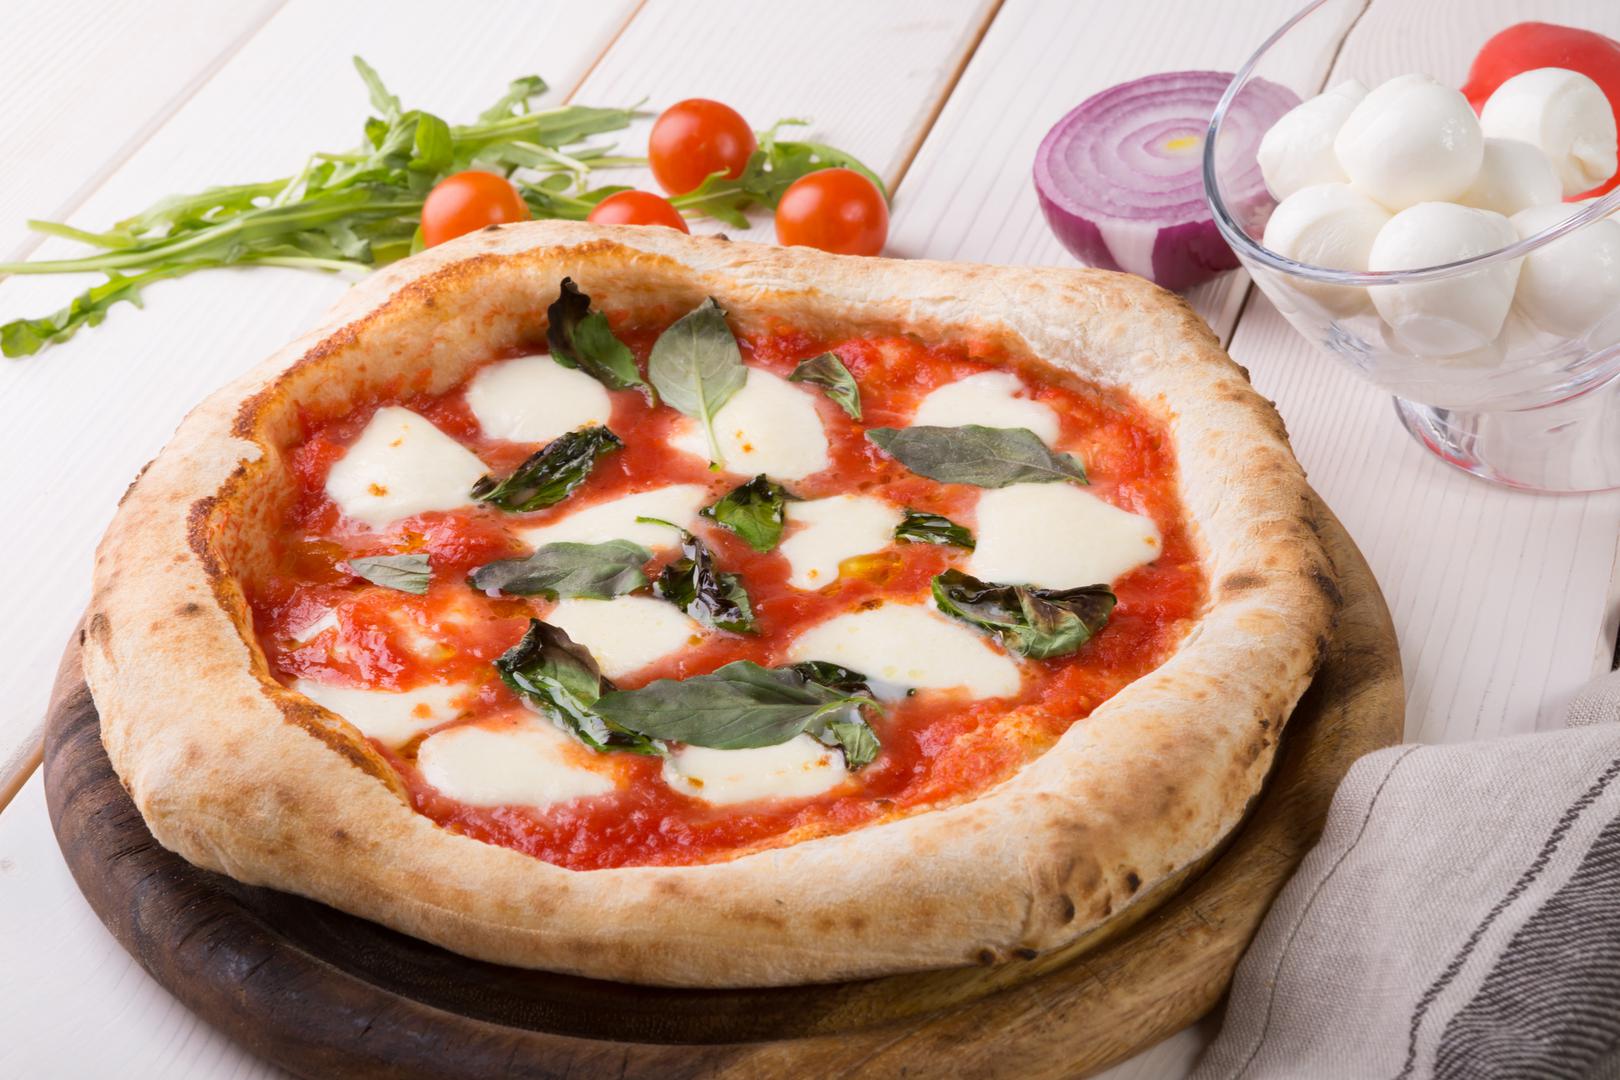 Postoji više uvriježenih naziva za Margherita pizzu poput pizza sa sirom, ili "prazna pizza", ali pizza Margherita u originalu je znatno "bogatija". 